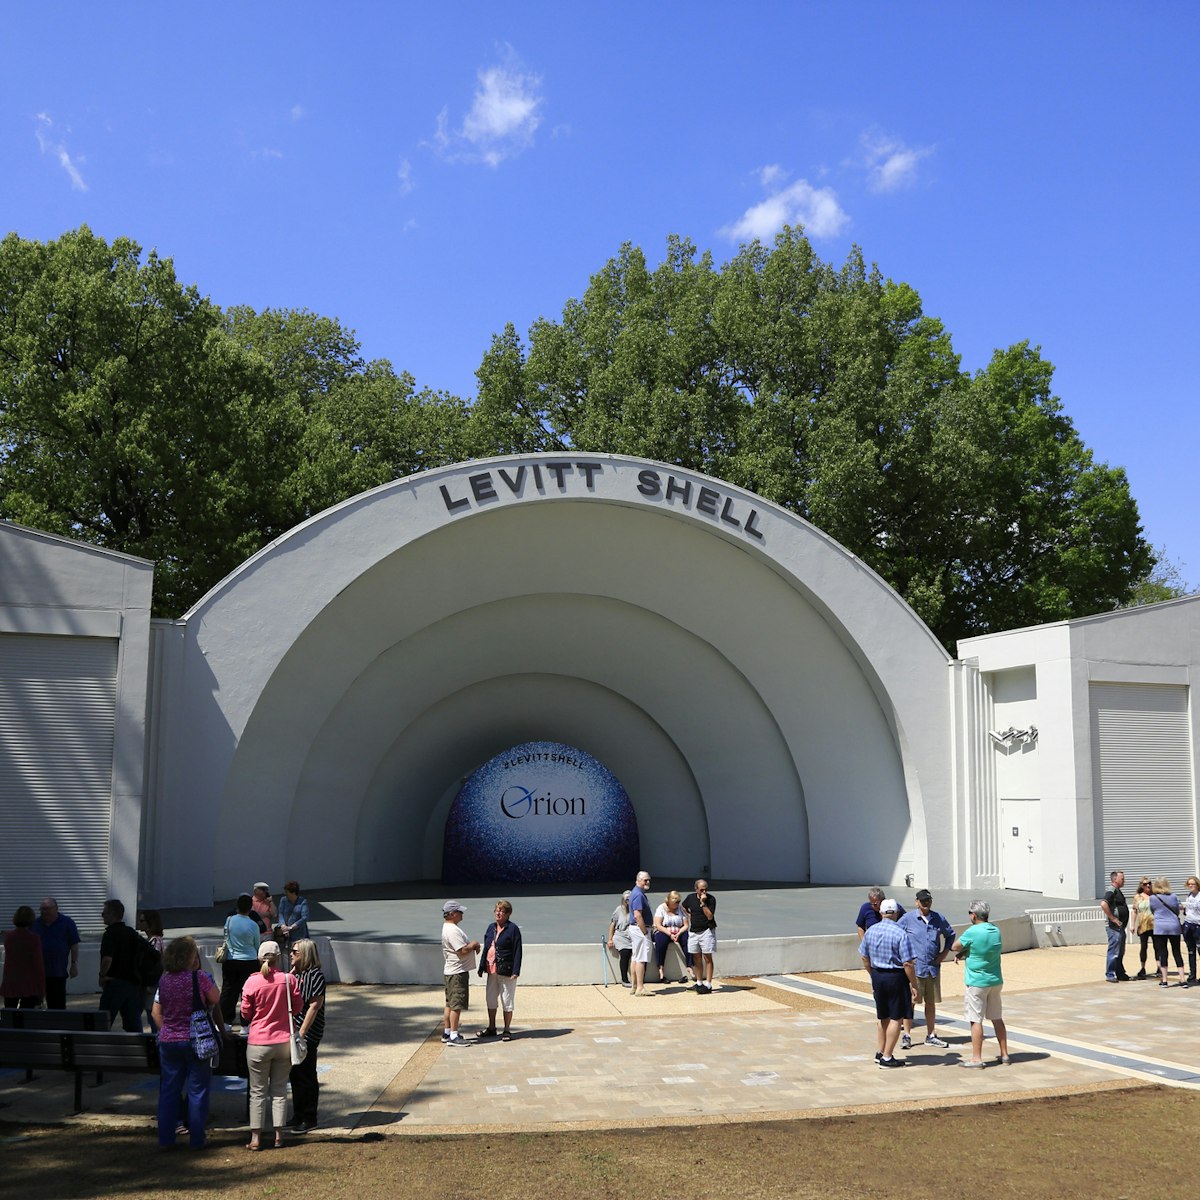 Historical Levitt Shell, an open-air amphitheater located in Overton Park, Memphis,TN.USA 04/2018
959411286
levitt shell